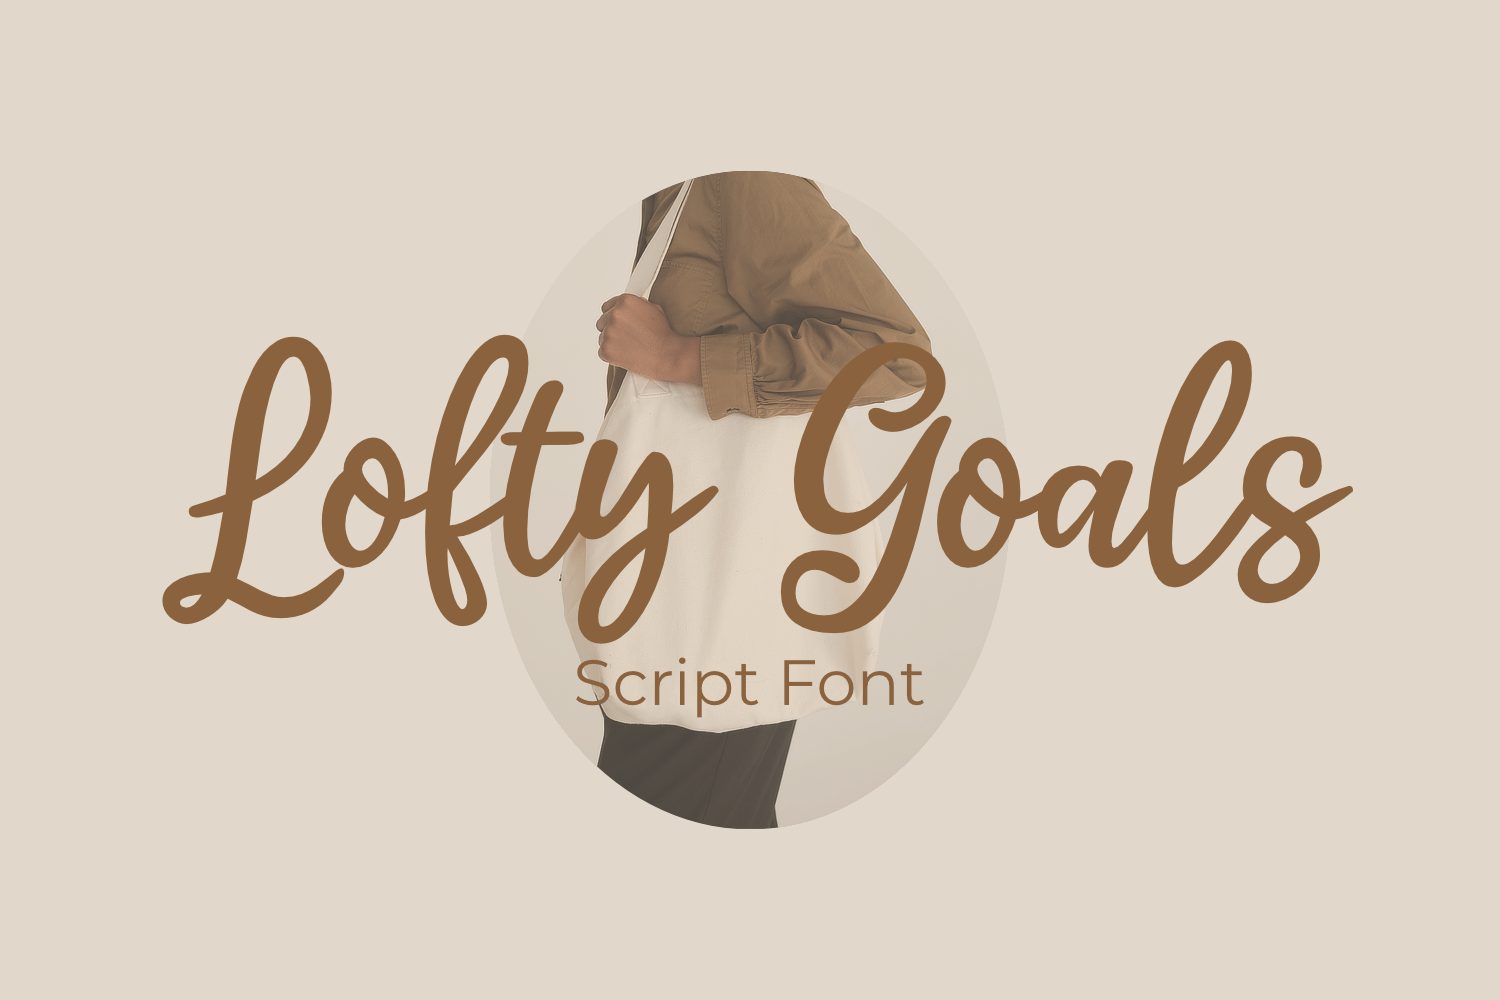 Lofty Goals Script Font